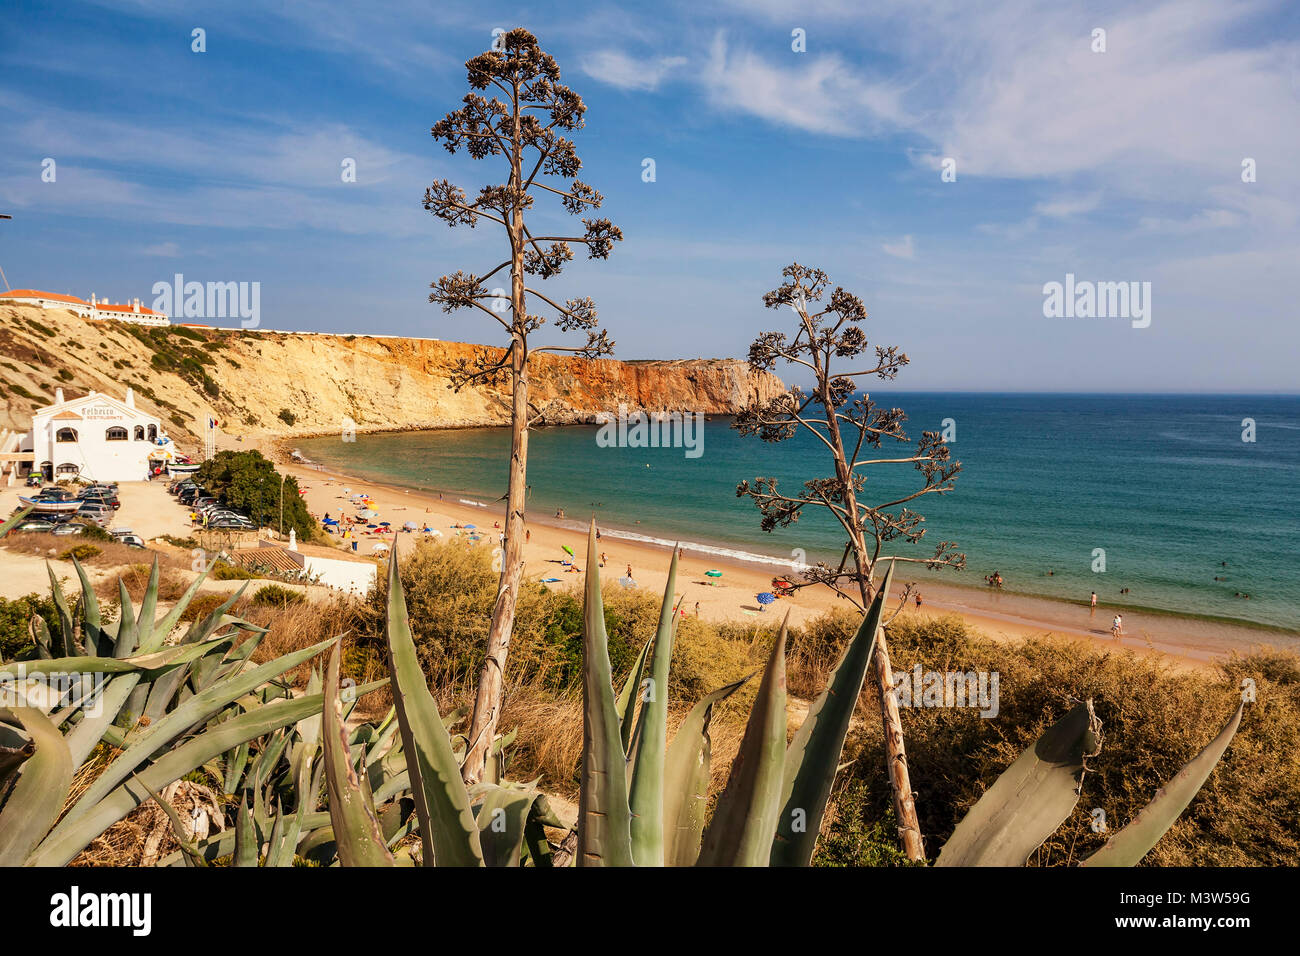 Portugal Algarve Atlantikc Küste Strand Praia de Mareta | Sagres Portugal Atlantik Tarifbezirk Kueste Badestrand, Algarven, Stockfoto